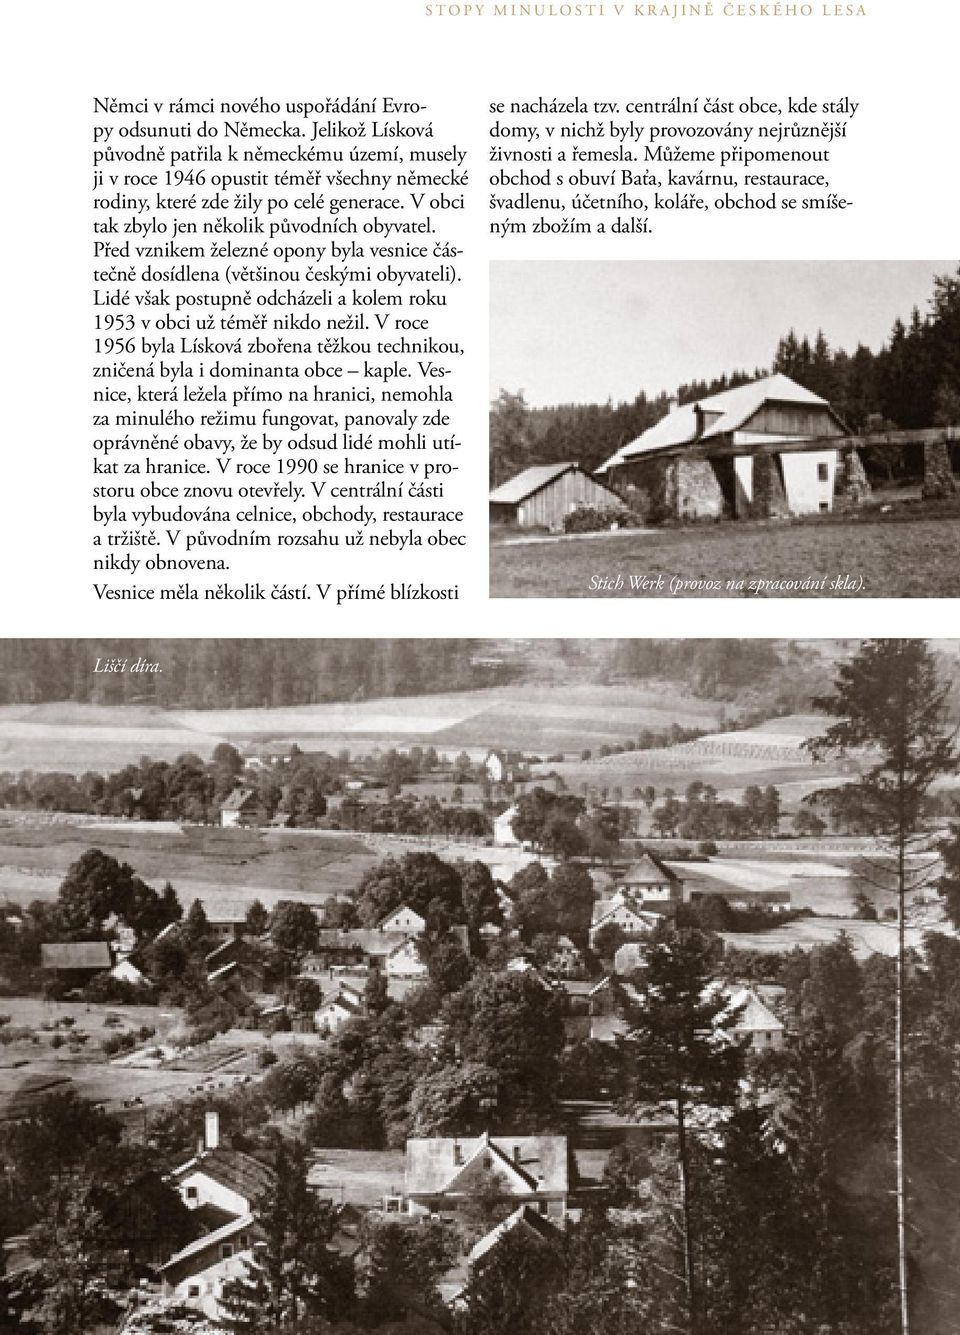 Před vznikem železné opony byla vesnice částečně dosídlena (většinou českými obyvateli). Lidé však postupně odcházeli a kolem roku 1953 v obci už téměř nikdo nežil.